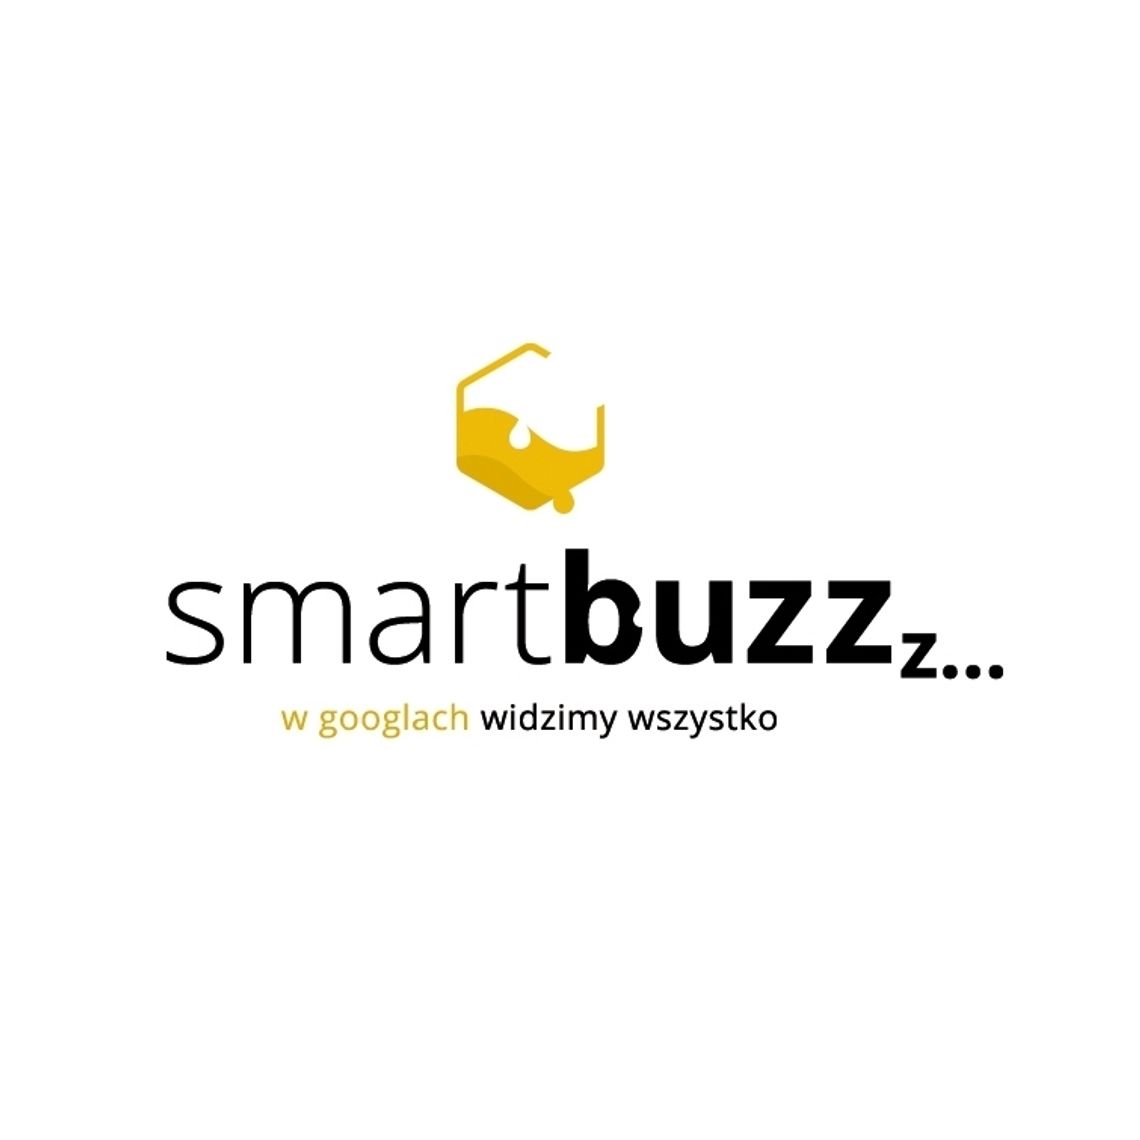 Smartbuzz